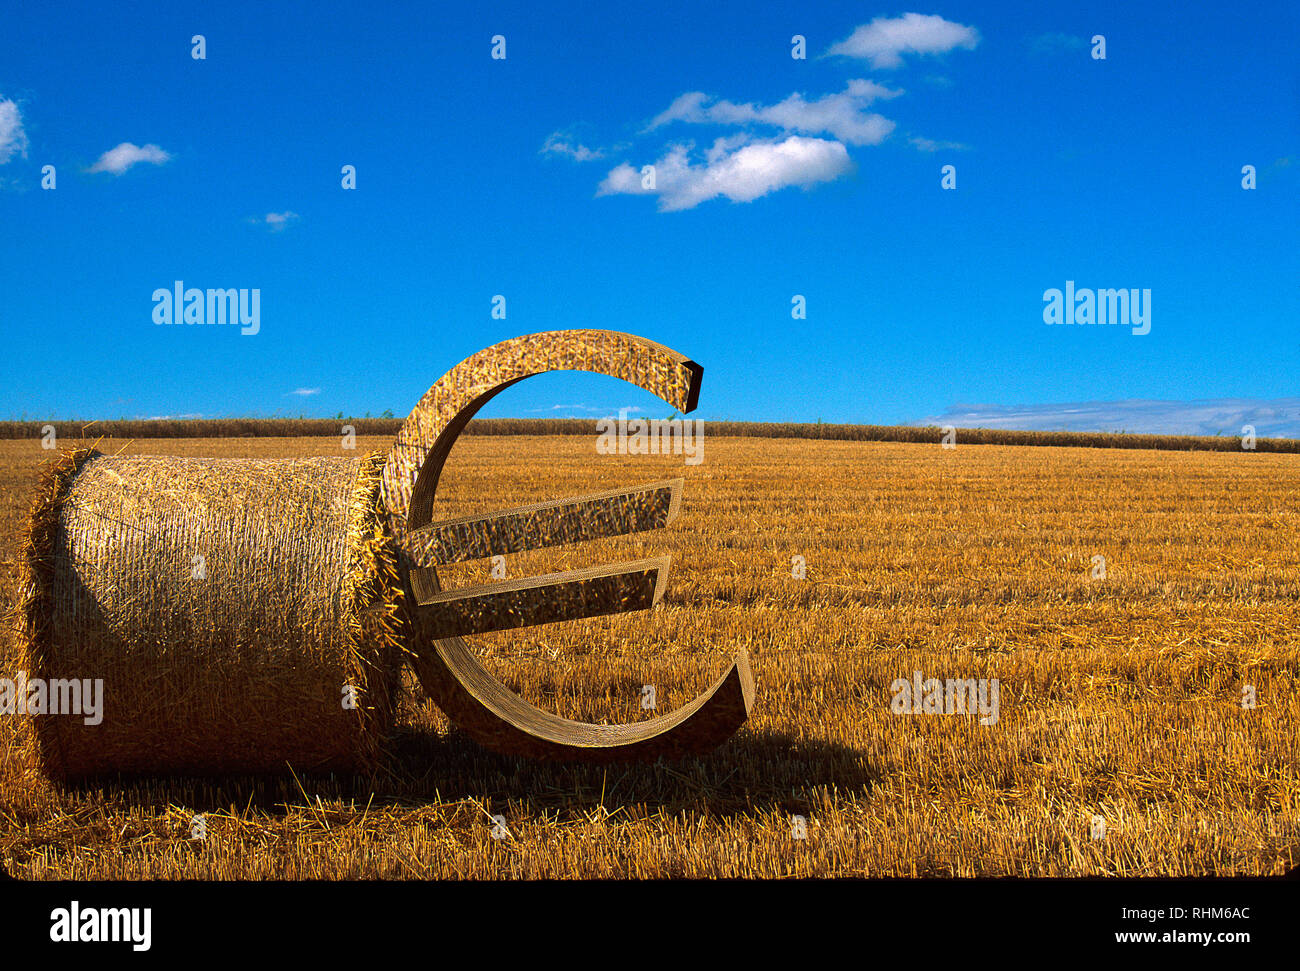 Signe Euro appuyé contre une botte de paille sur un champ moissonné, illustration Banque D'Images